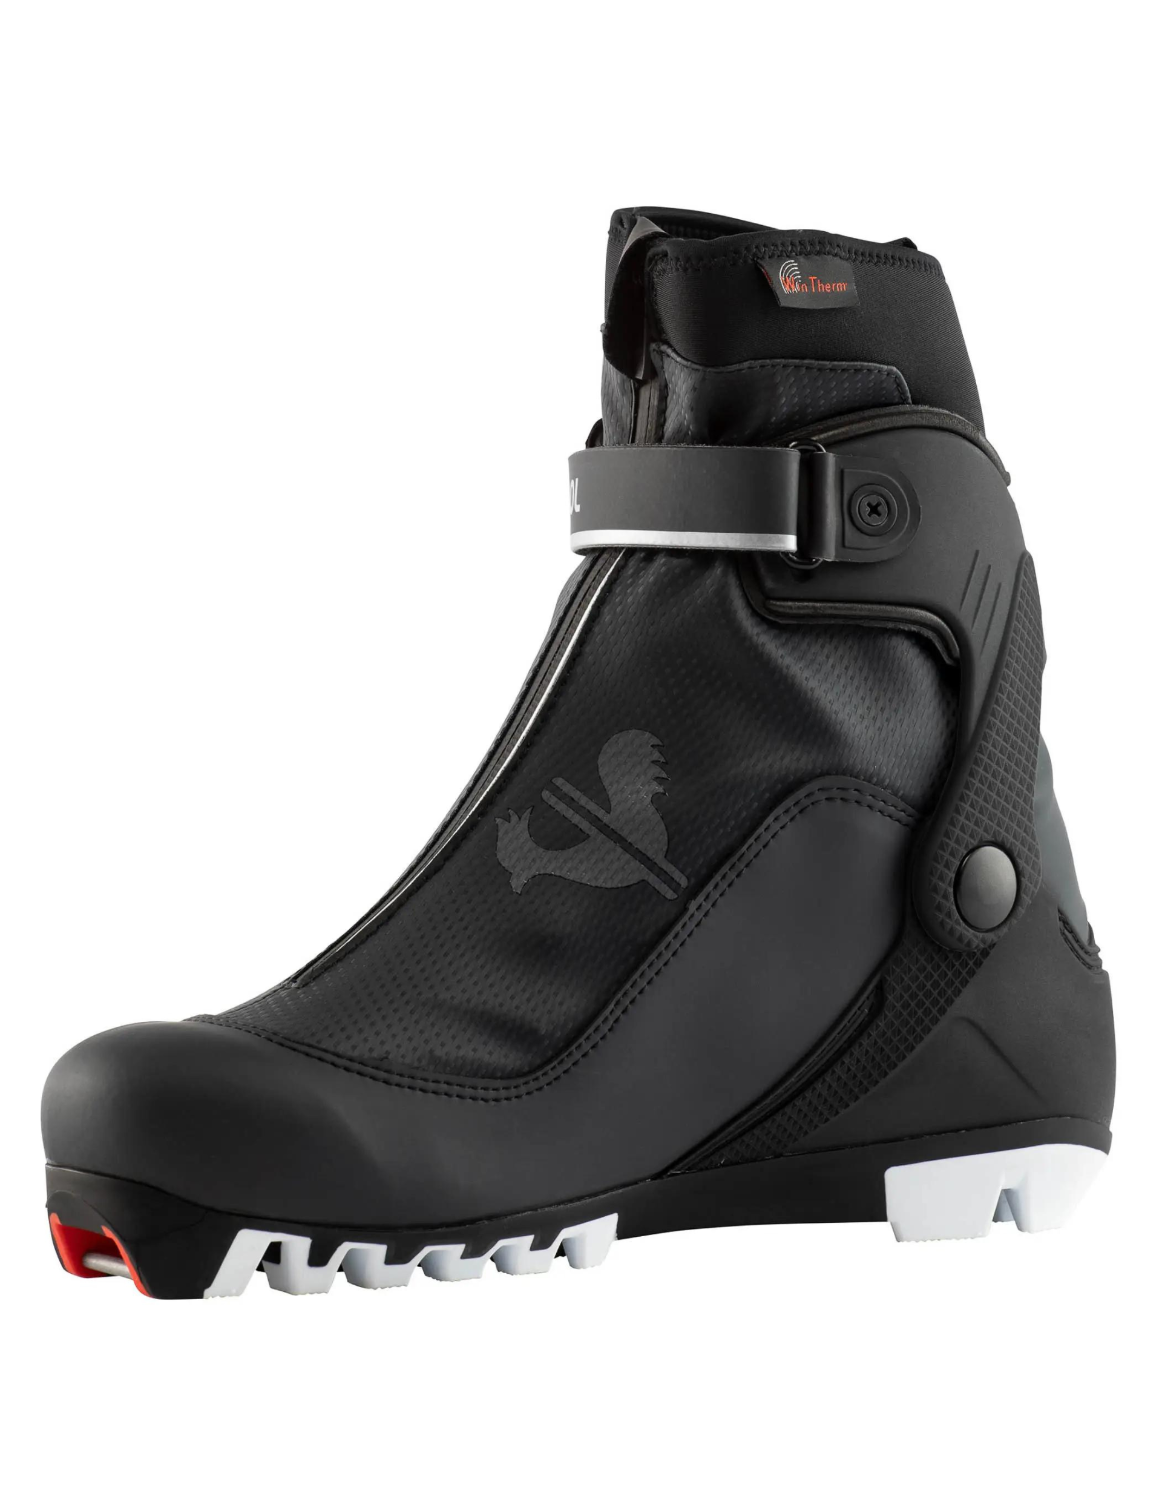 Chaussures de Ski de Fond Rossignol X-8 Skate Femme